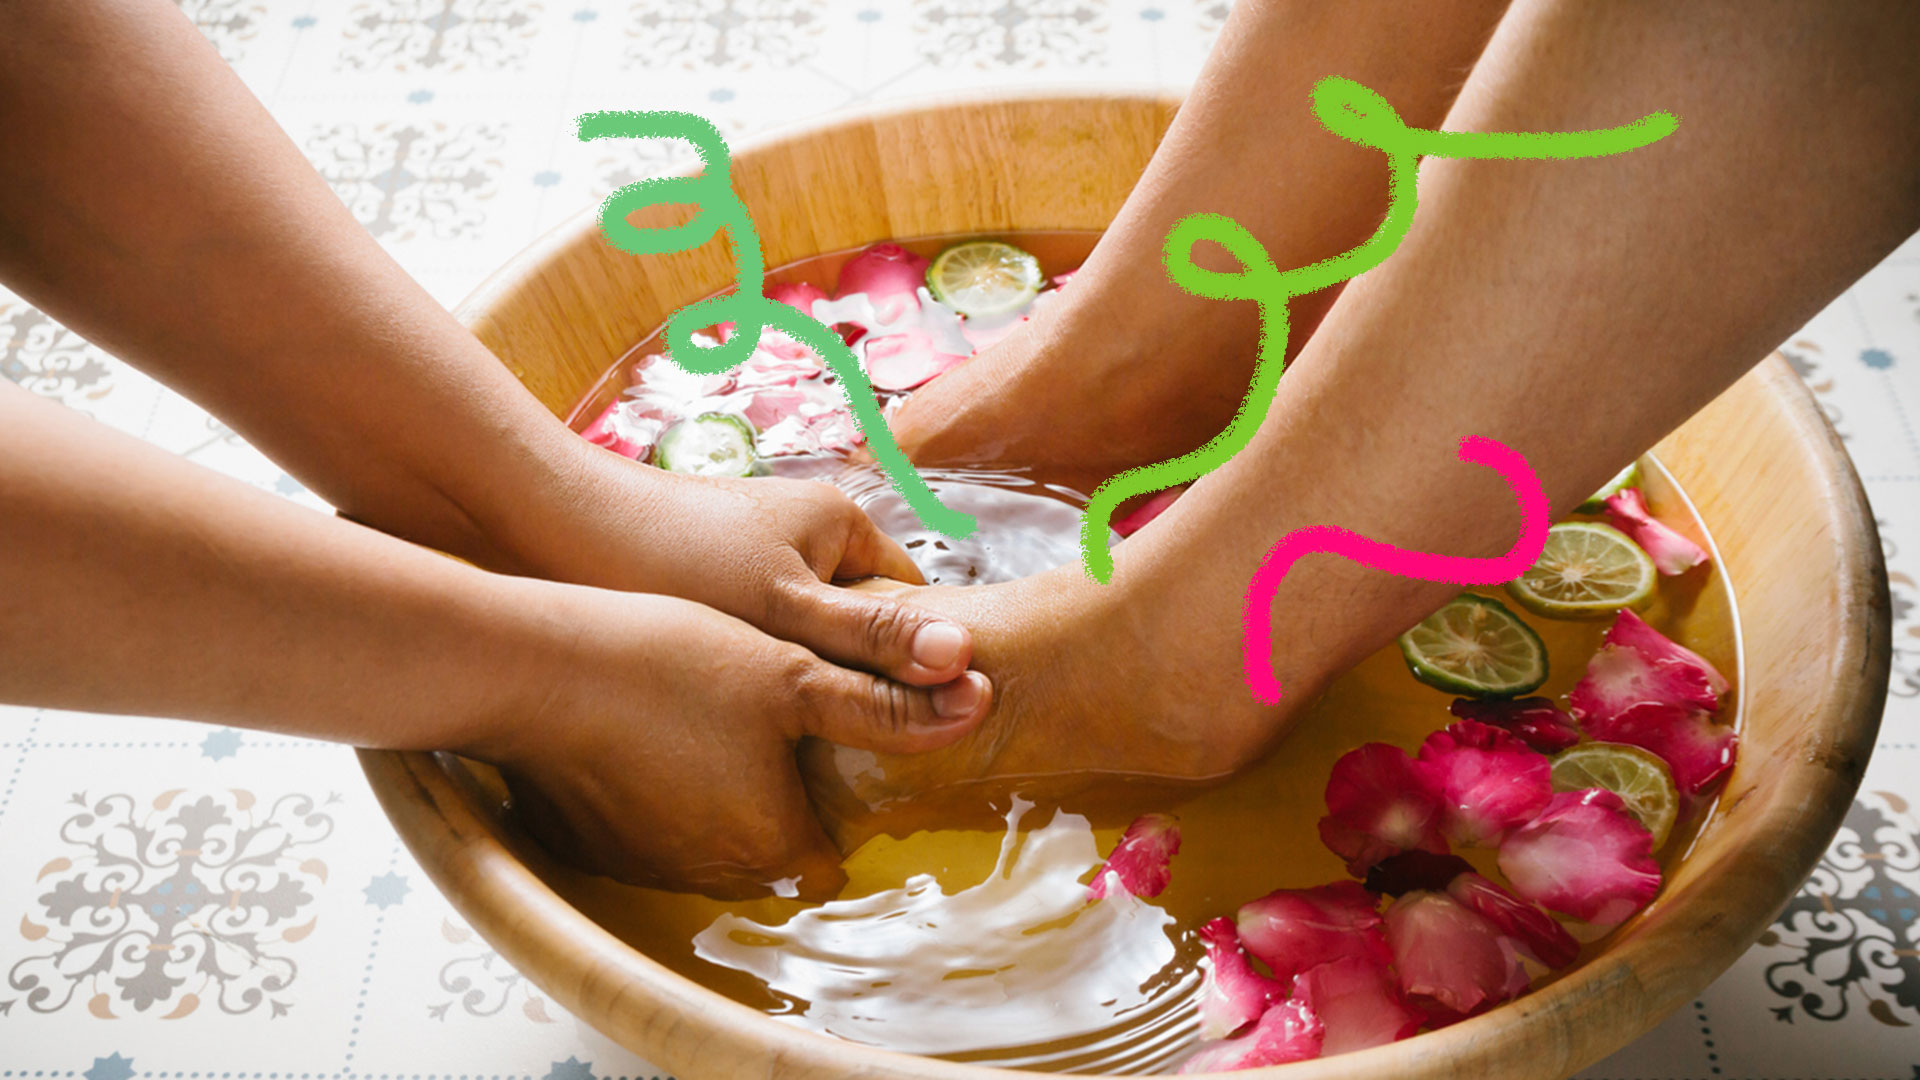 Uma bacia com ervas, flores e água quente. Mãos fazendo massagem nos pés.